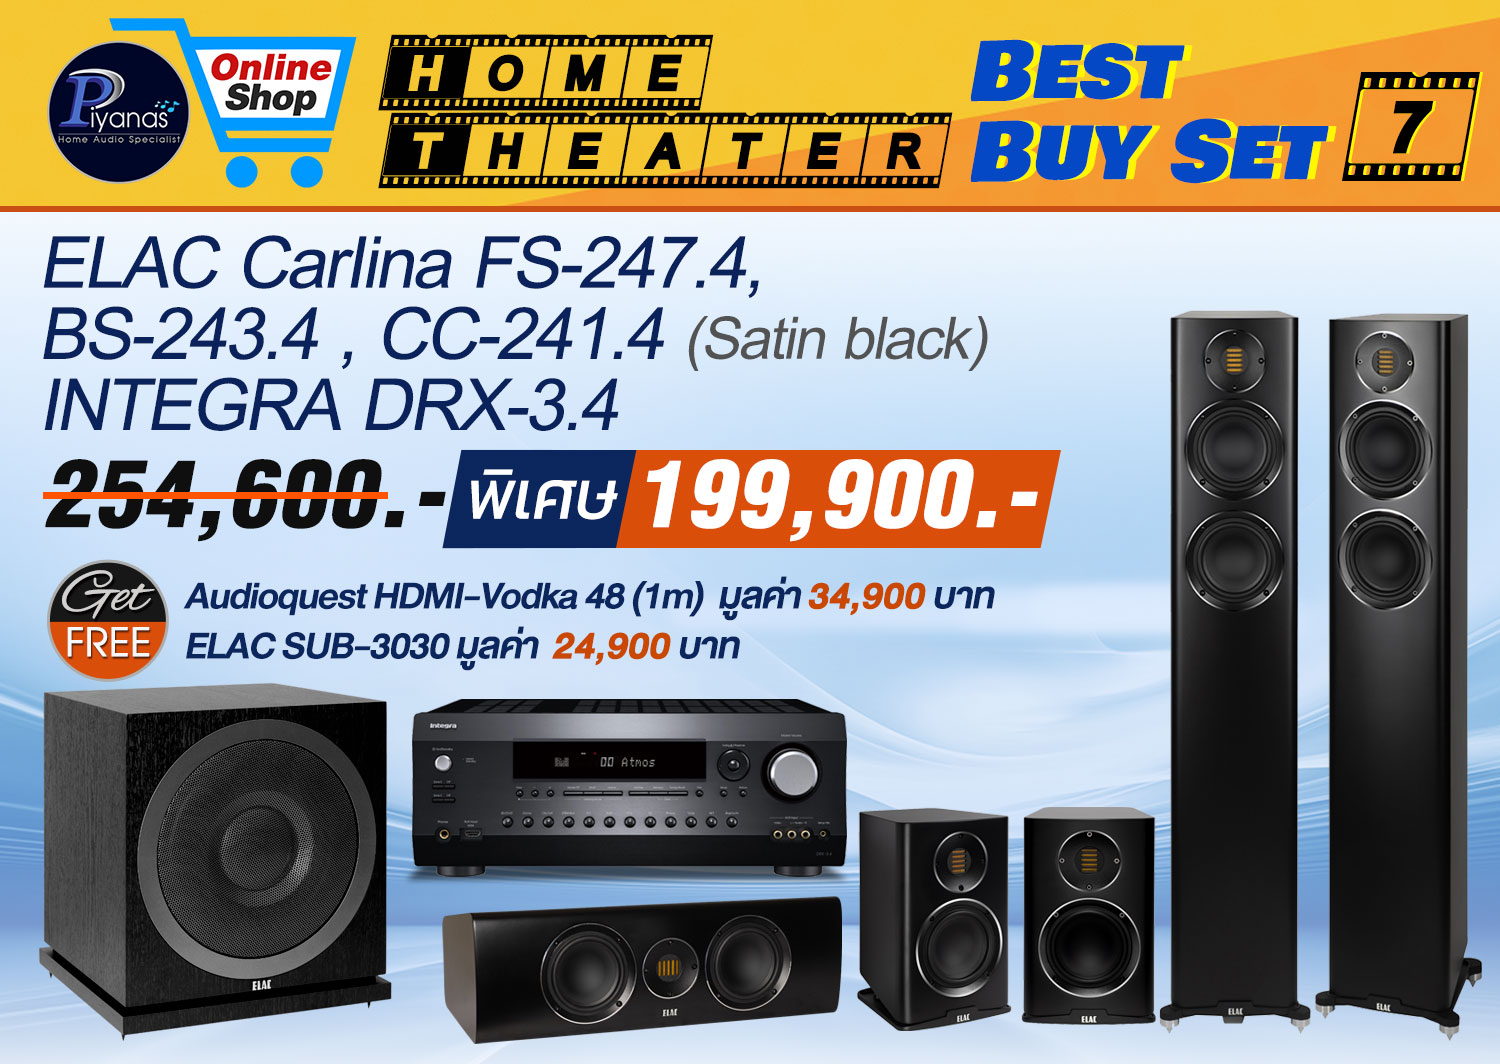 CarIina FS-247.4 + BS-243.4 + 
CC-241.4 (Satin black) +INTEGRA DRX-3.4